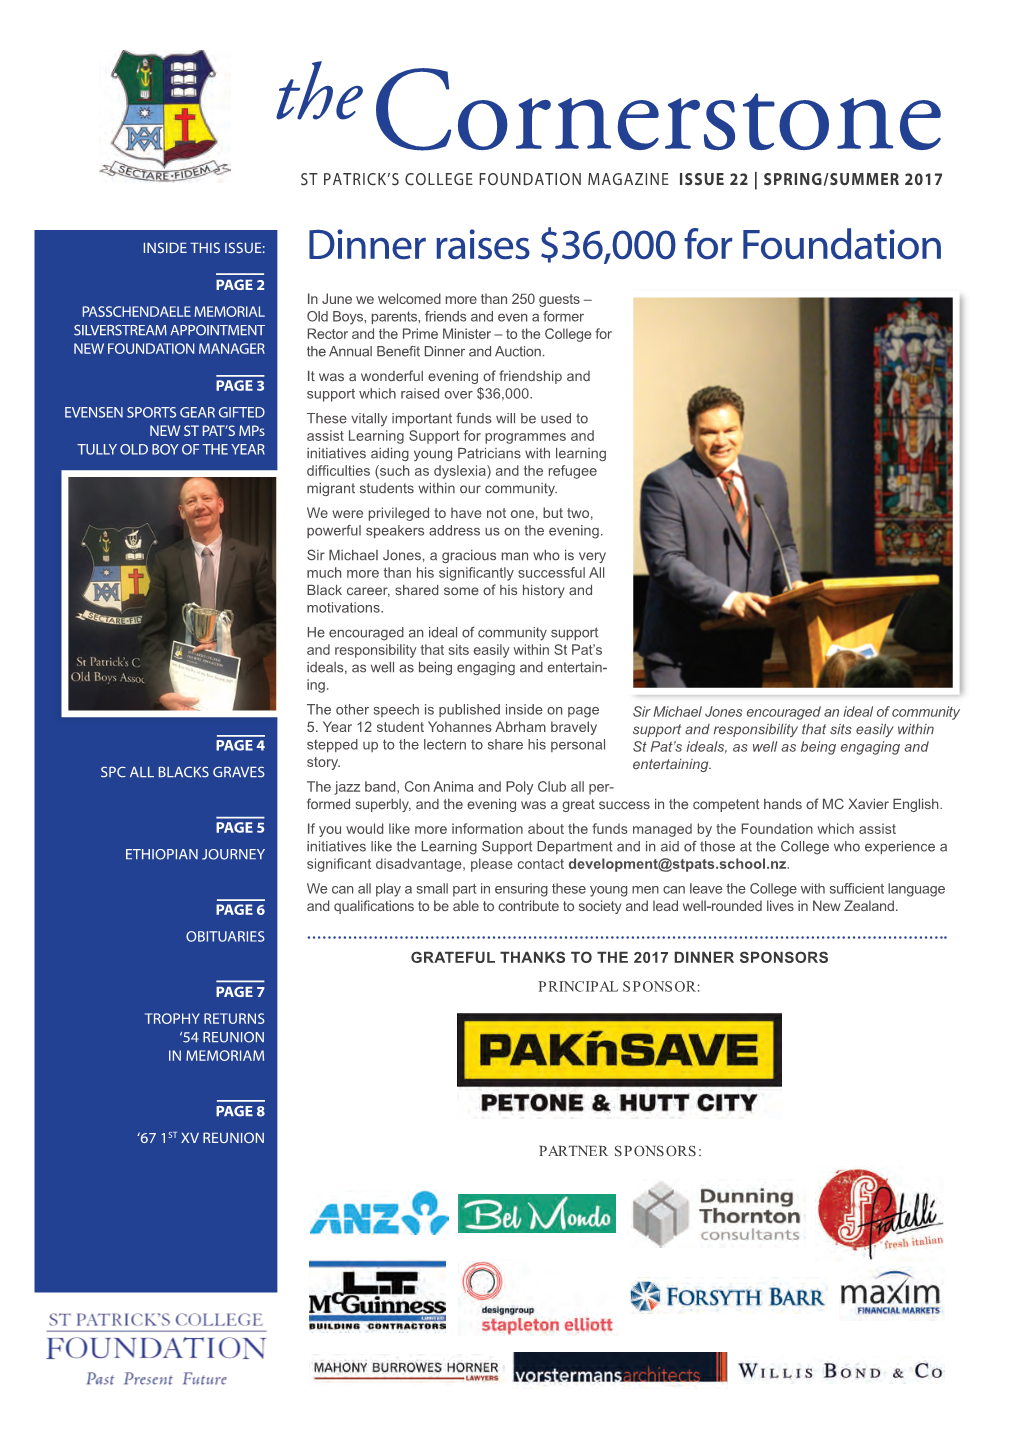 Dinner Raises $36,000 for Foundation